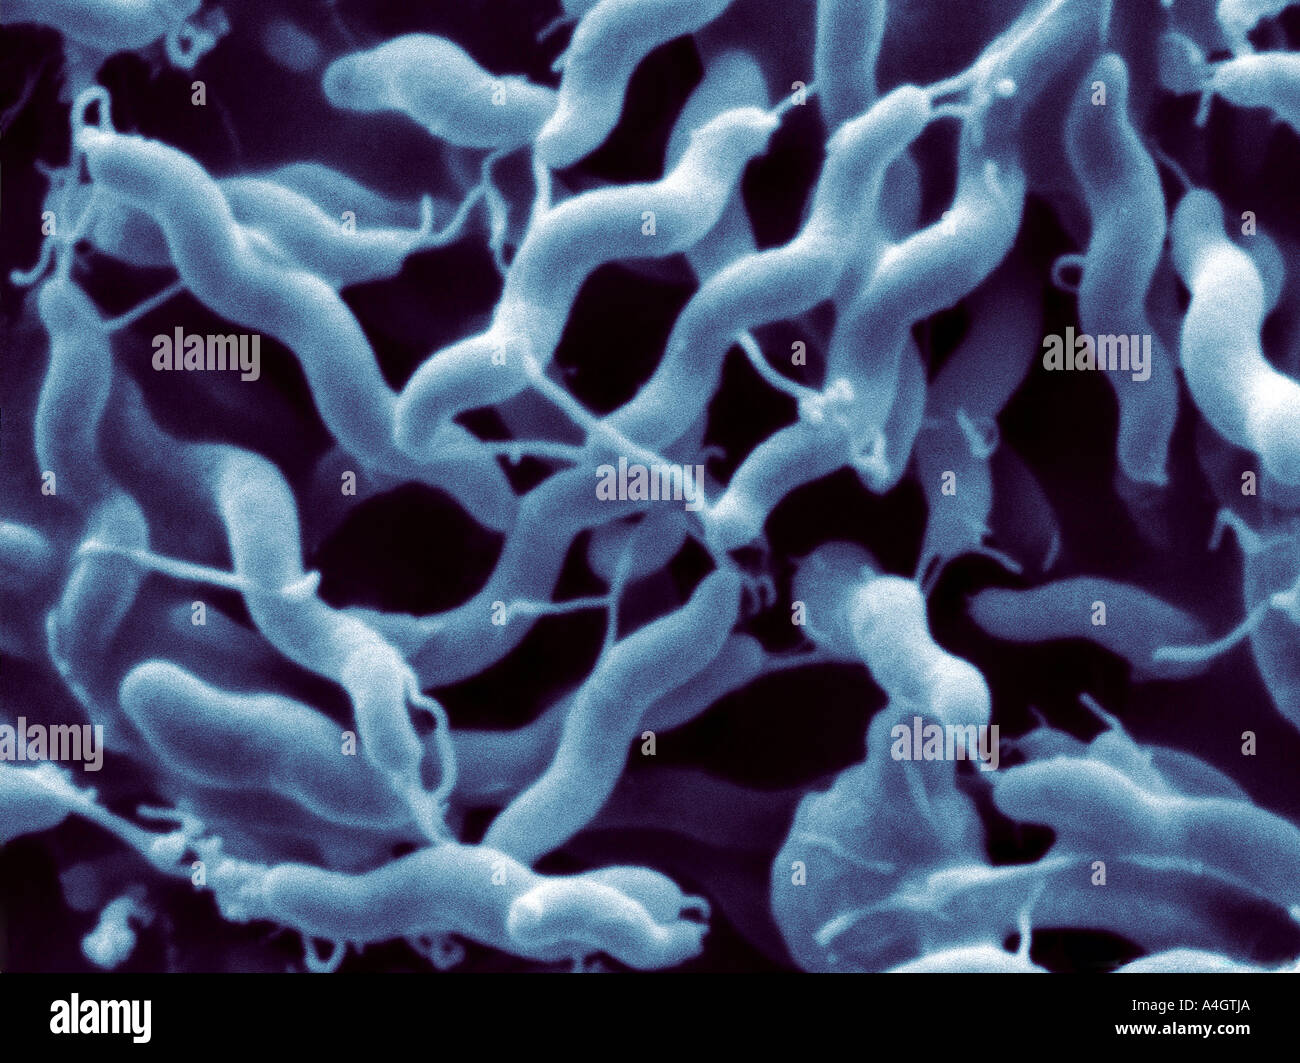 Il s'agit d'une amélioration de la couleur de l'analyse des électrons Microphotographie de la bactérie Campylobacter jejuni Banque D'Images